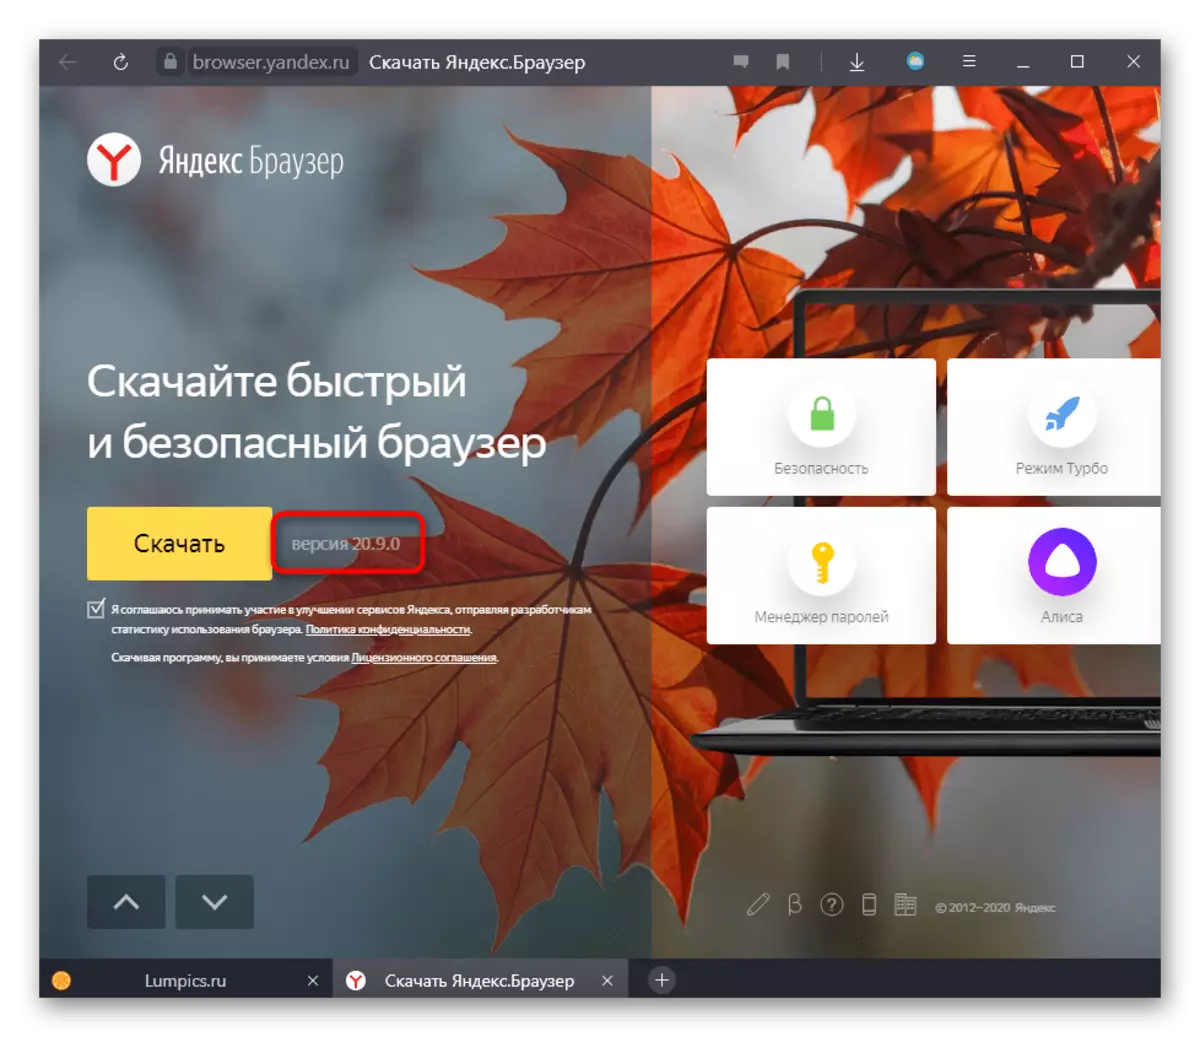 Kontrollige Yandex.Bauseri versiooni ametlikul veebisaidil